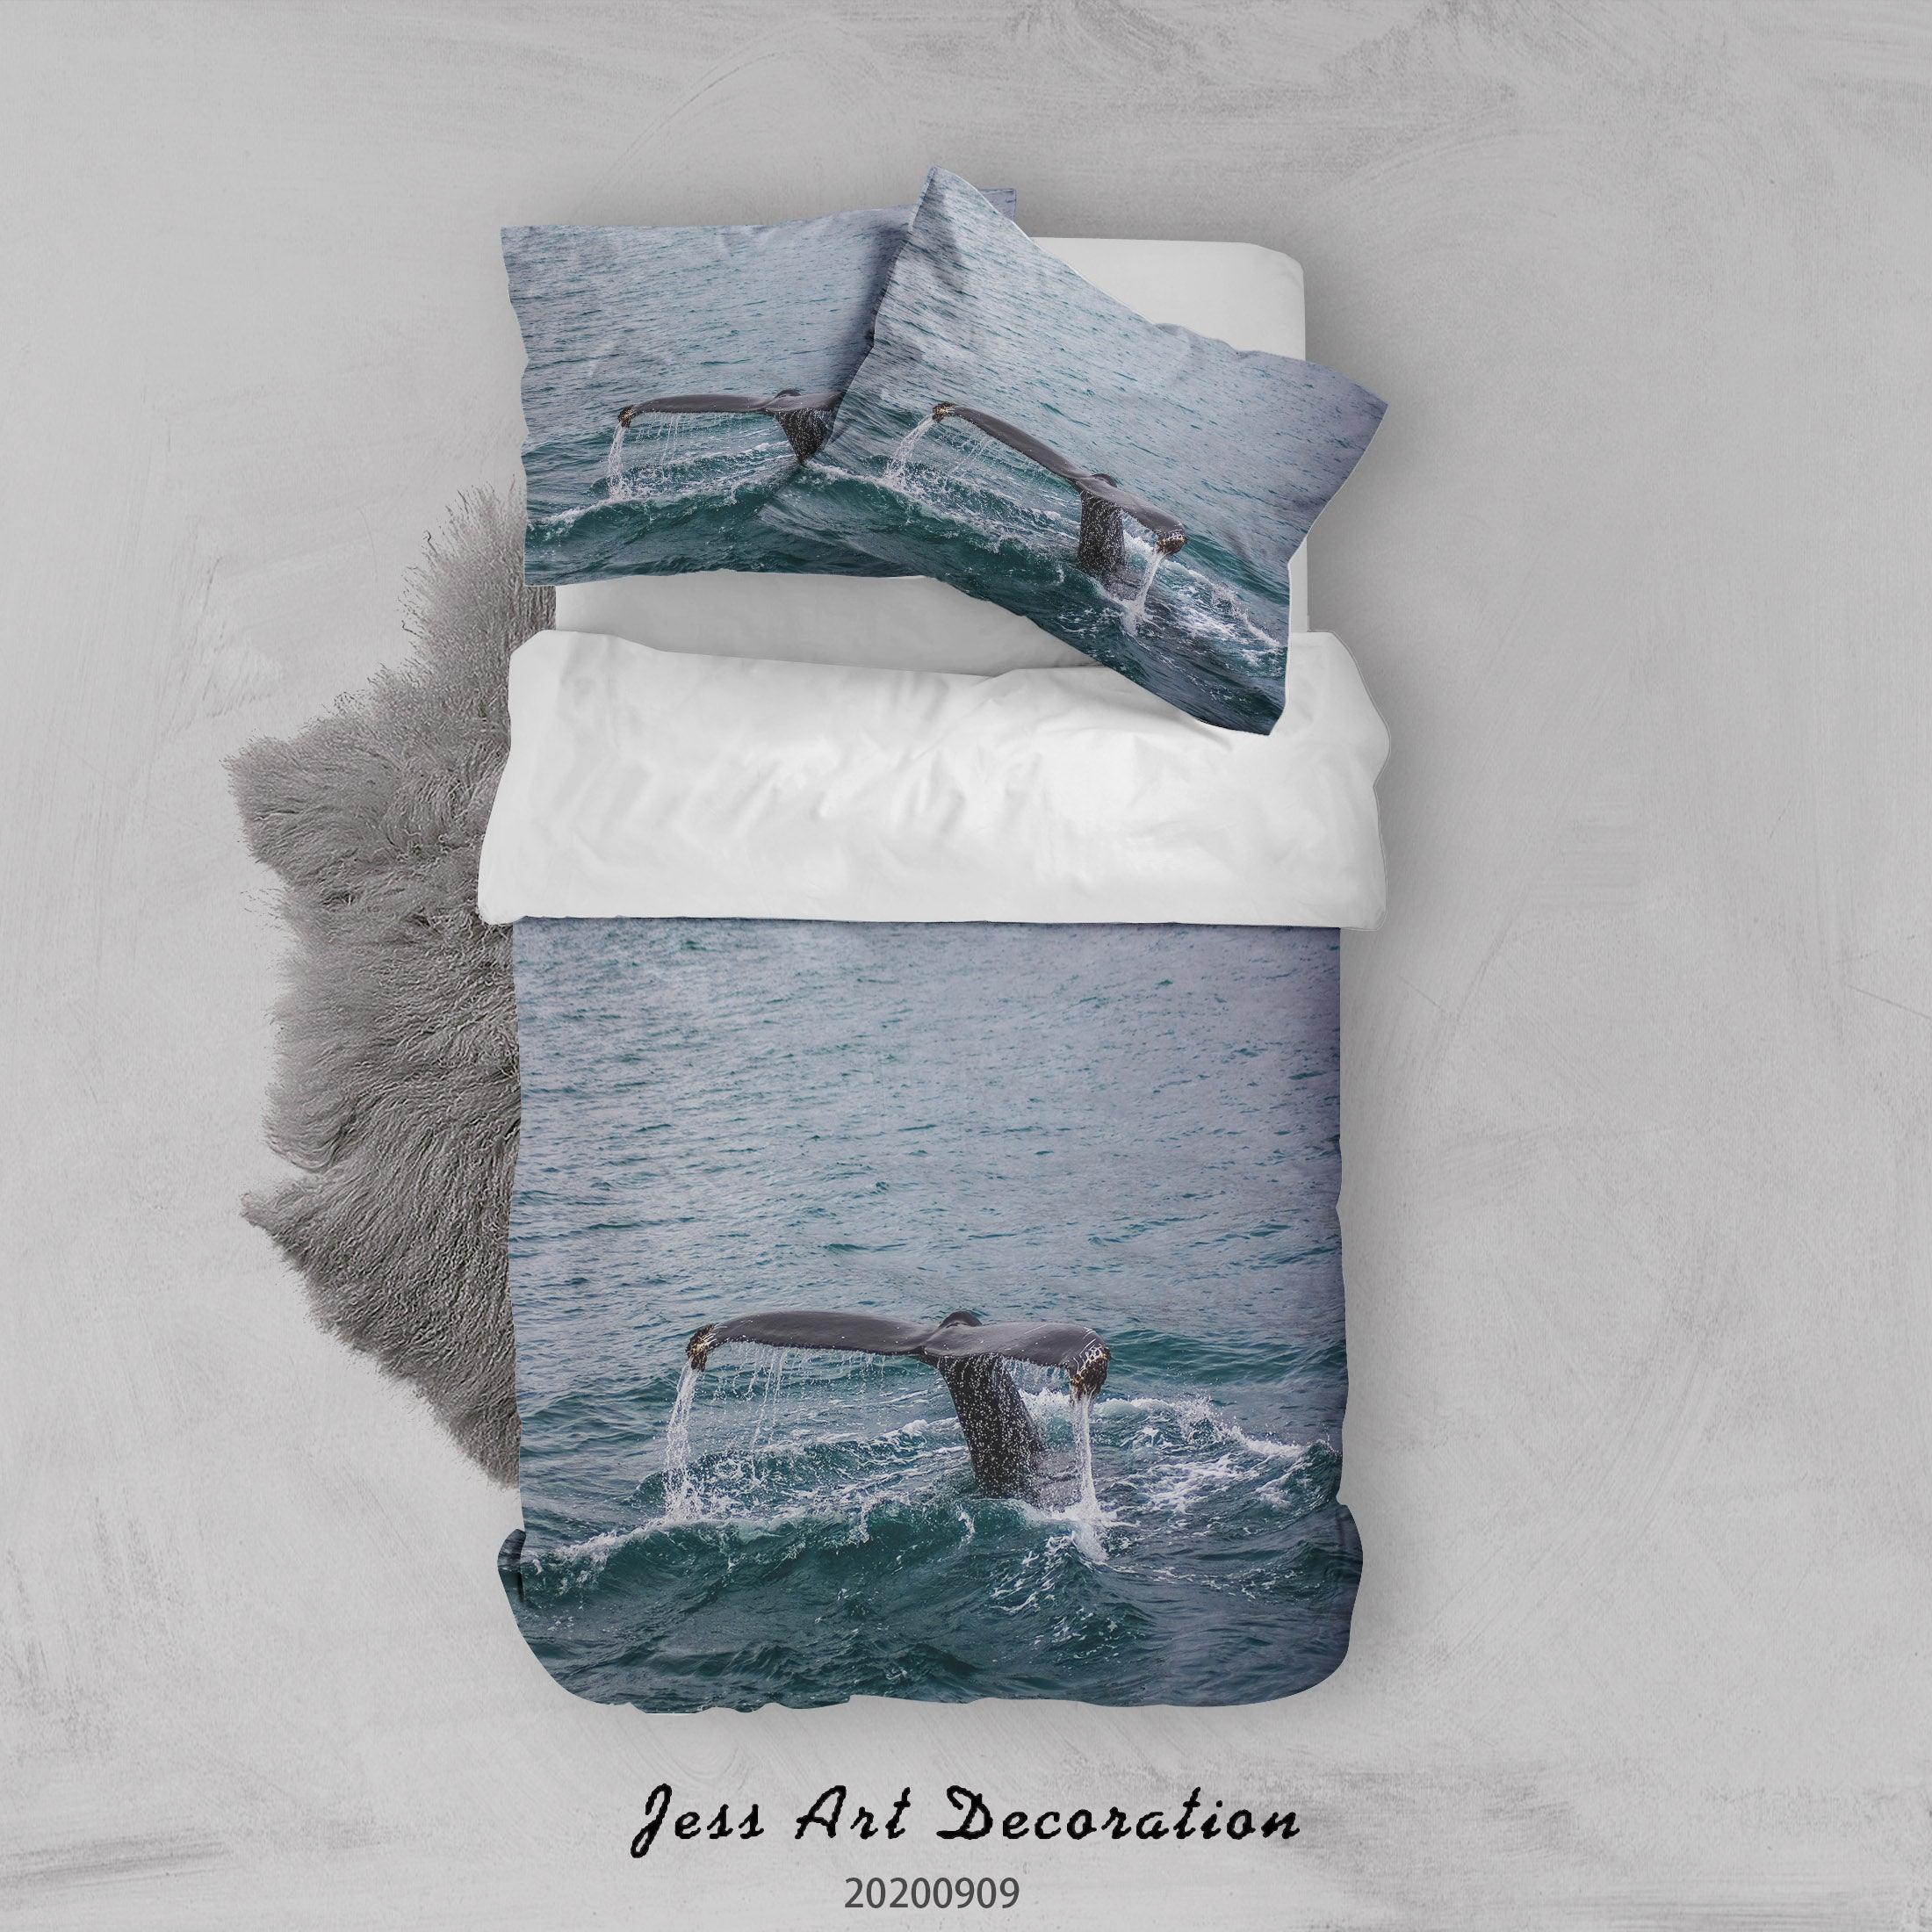 3D Whale Tail Sea Quilt Cover Set Bedding Set Duvet Cover Pillowcases WJ 1999- Jess Art Decoration